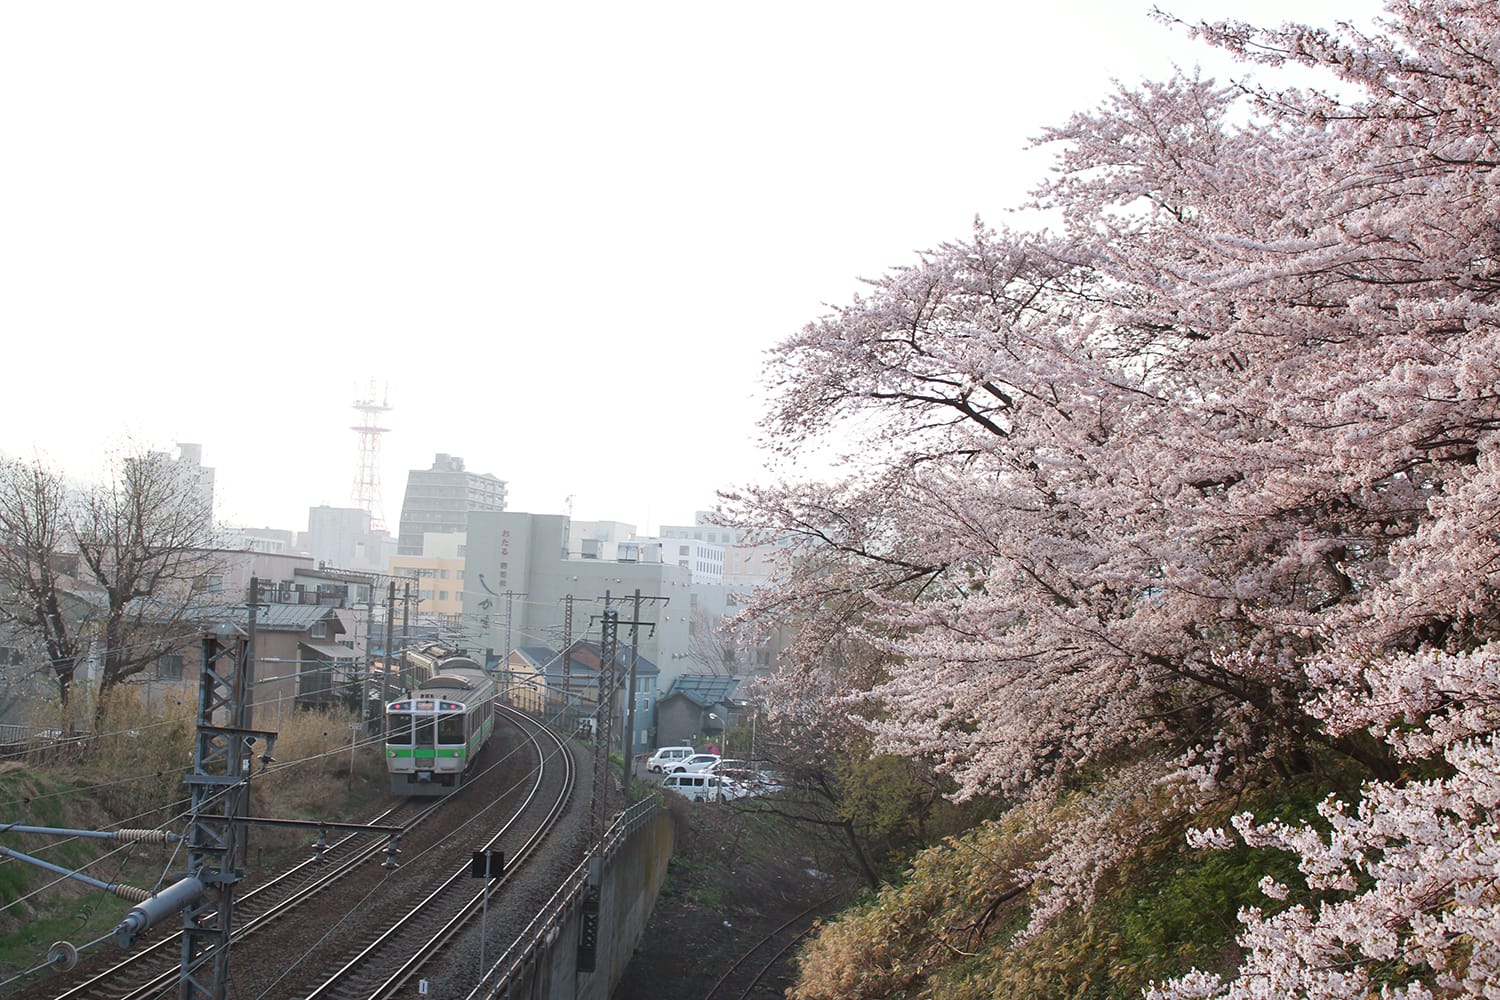 電車と桜が入った写真を撮りたいと一年前から思っていて、偶然通りがかった時に撮れました。桜の色と電車の緑がマッチしています。